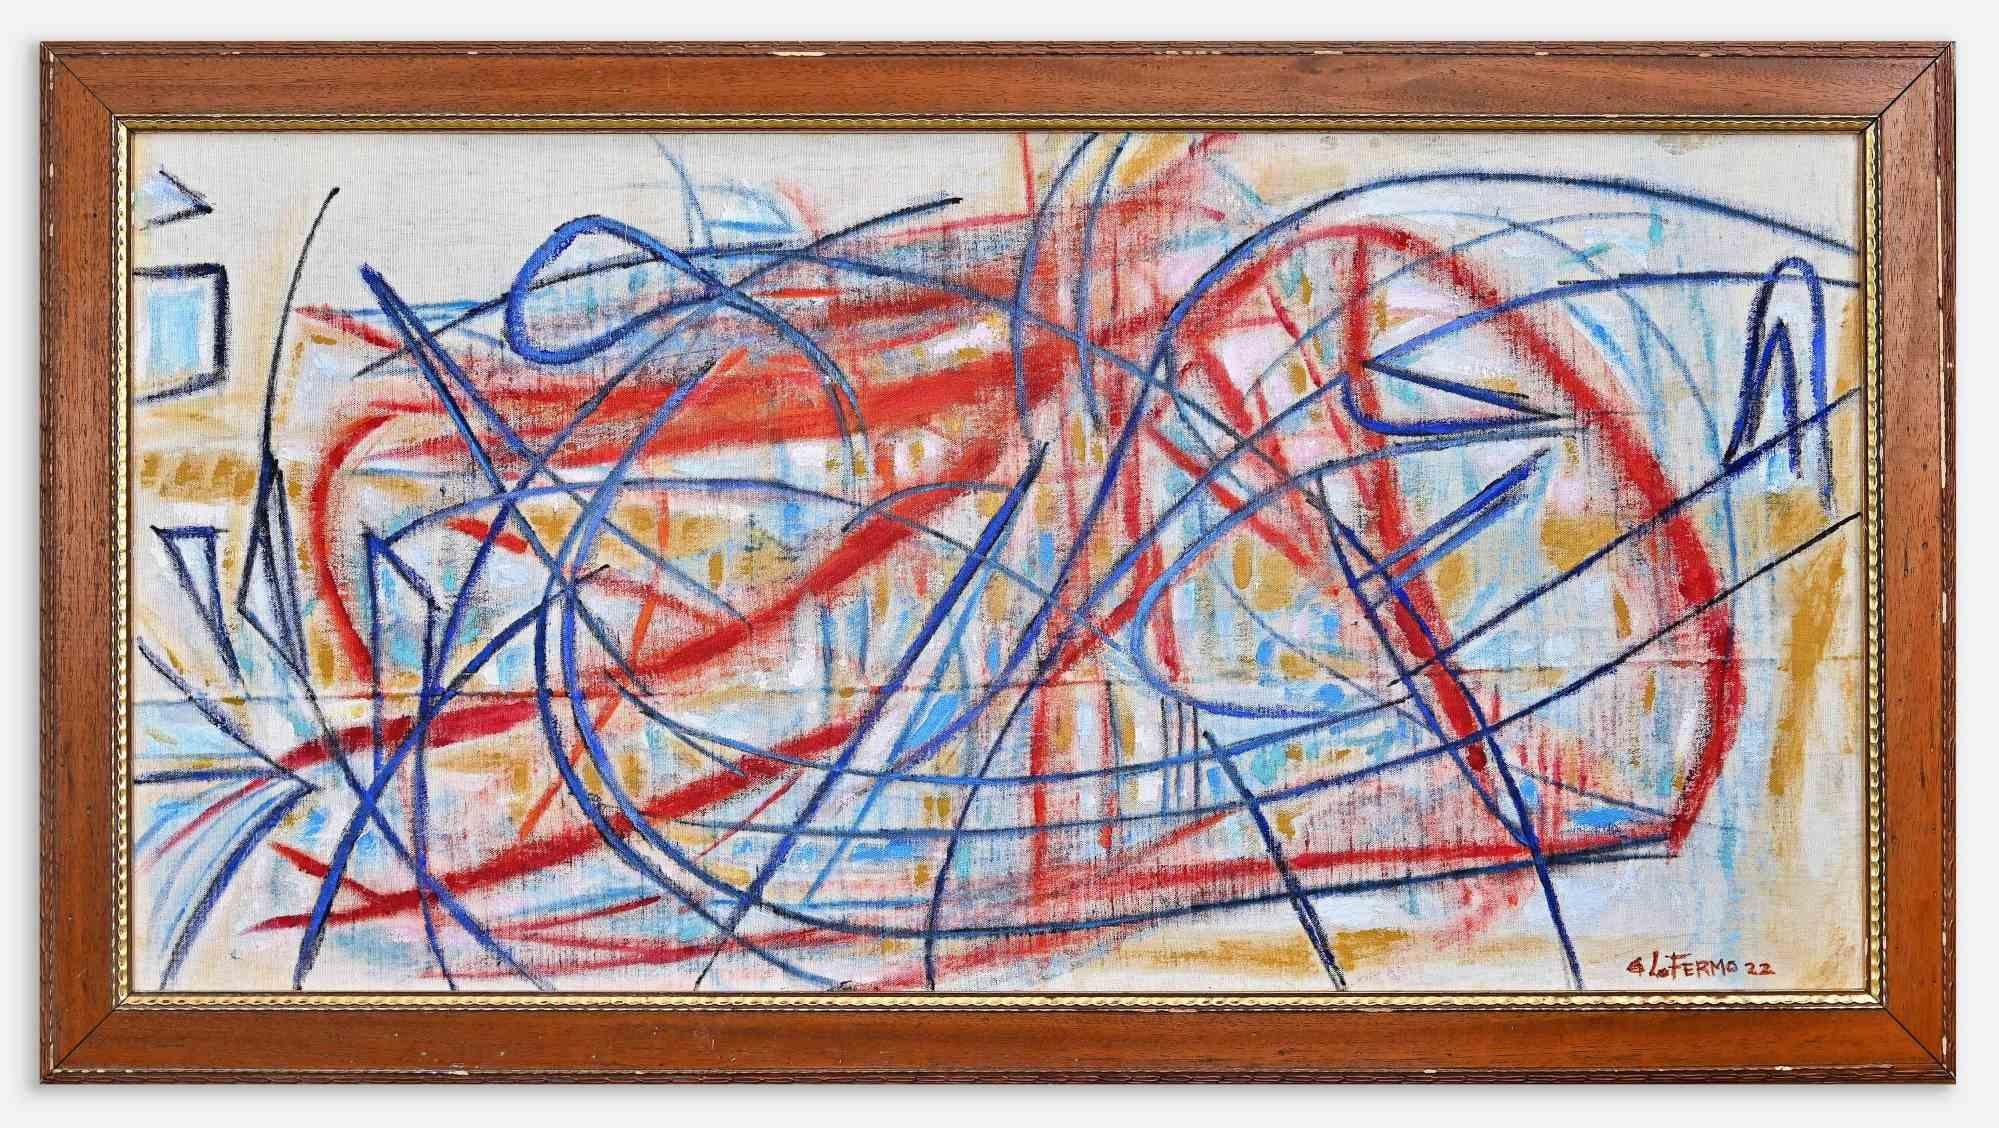 Abstract Expression ist ein Kunstwerk von Giorgio Lo Fermo (geb. 1947) aus dem Jahr 2022.

Original Ölgemälde auf Leinwand.

Handsigniert und datiert am linken unteren Rand.

Handsigniert, datiert und betitelt auf der Rückseite der Leinwand.

Gute